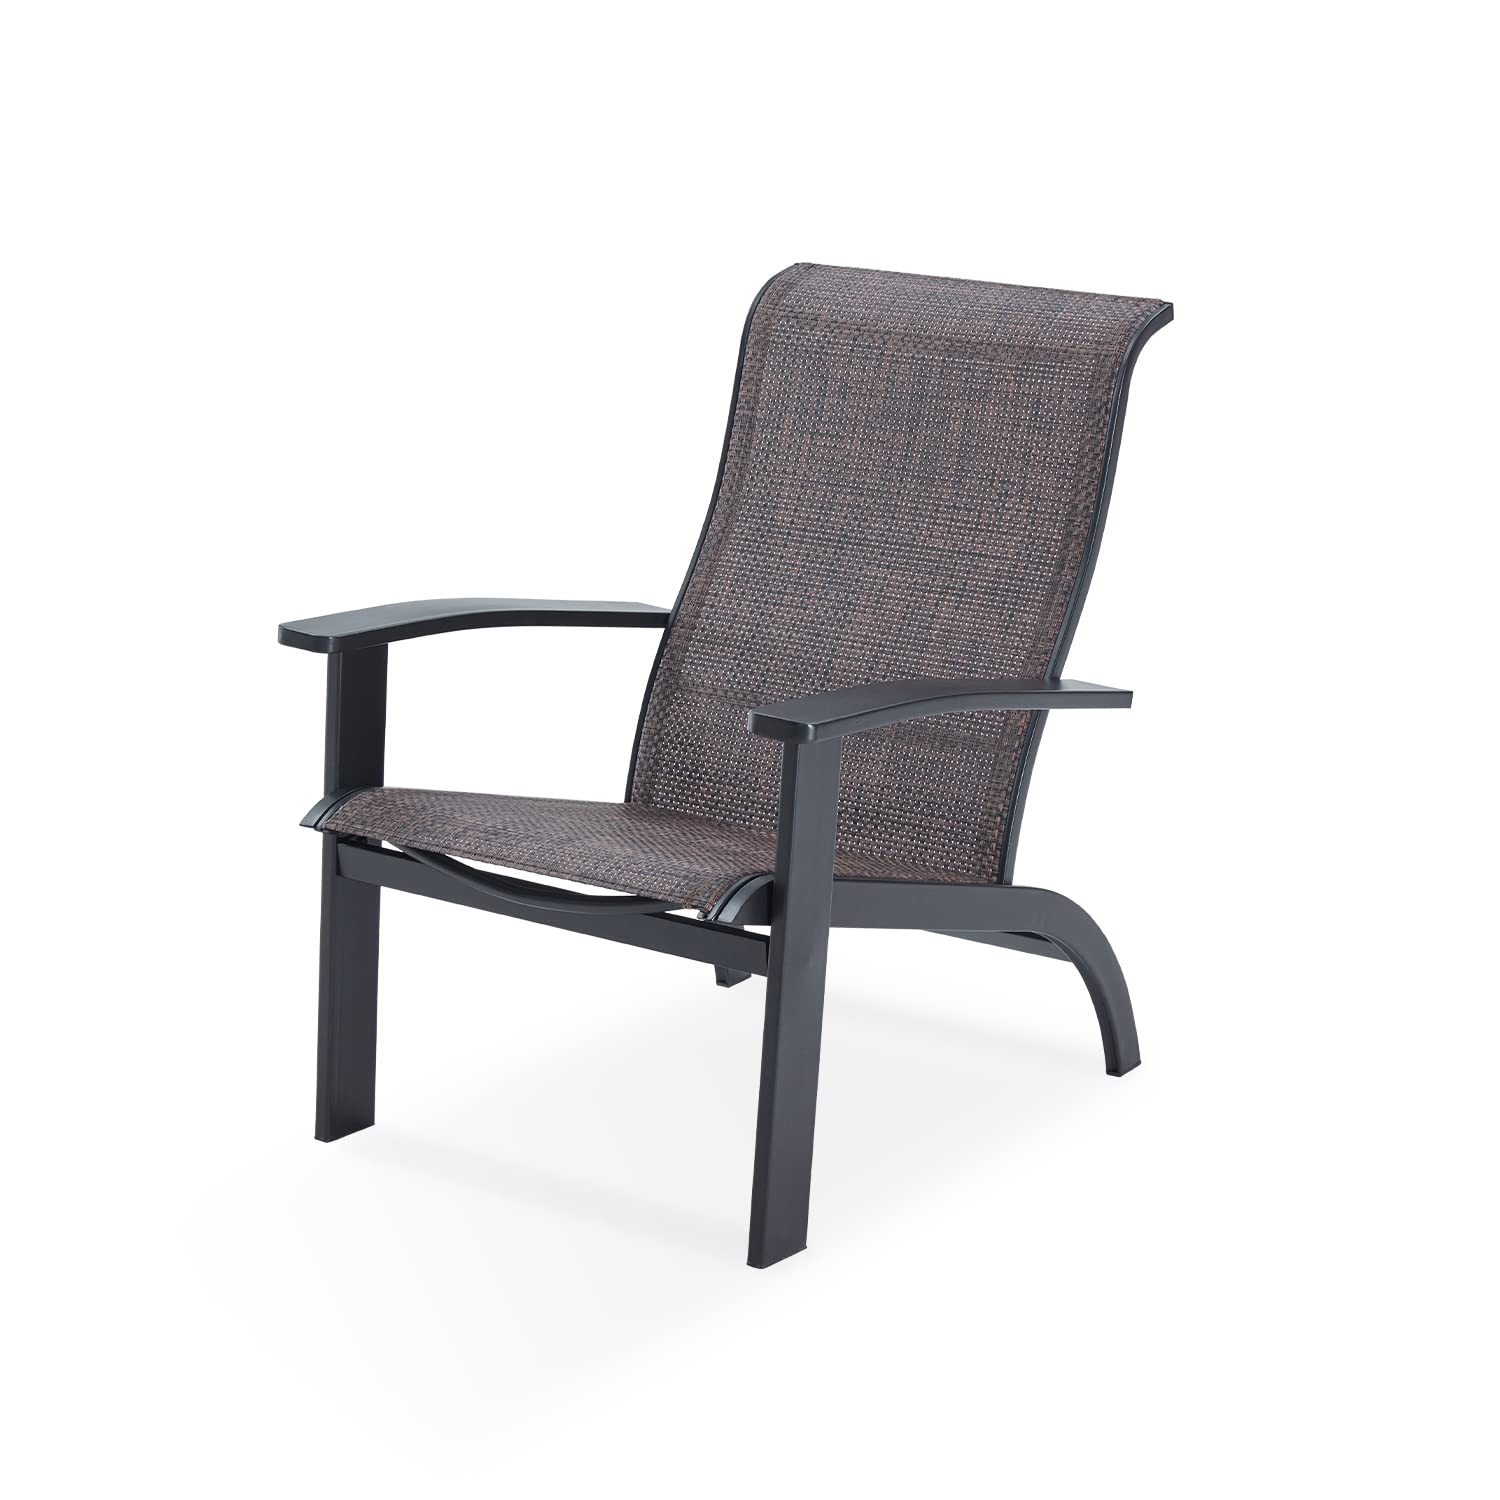 Silla Vicllax Adirondack, silla de jardín para muebles de exterior resistente a la intemperie